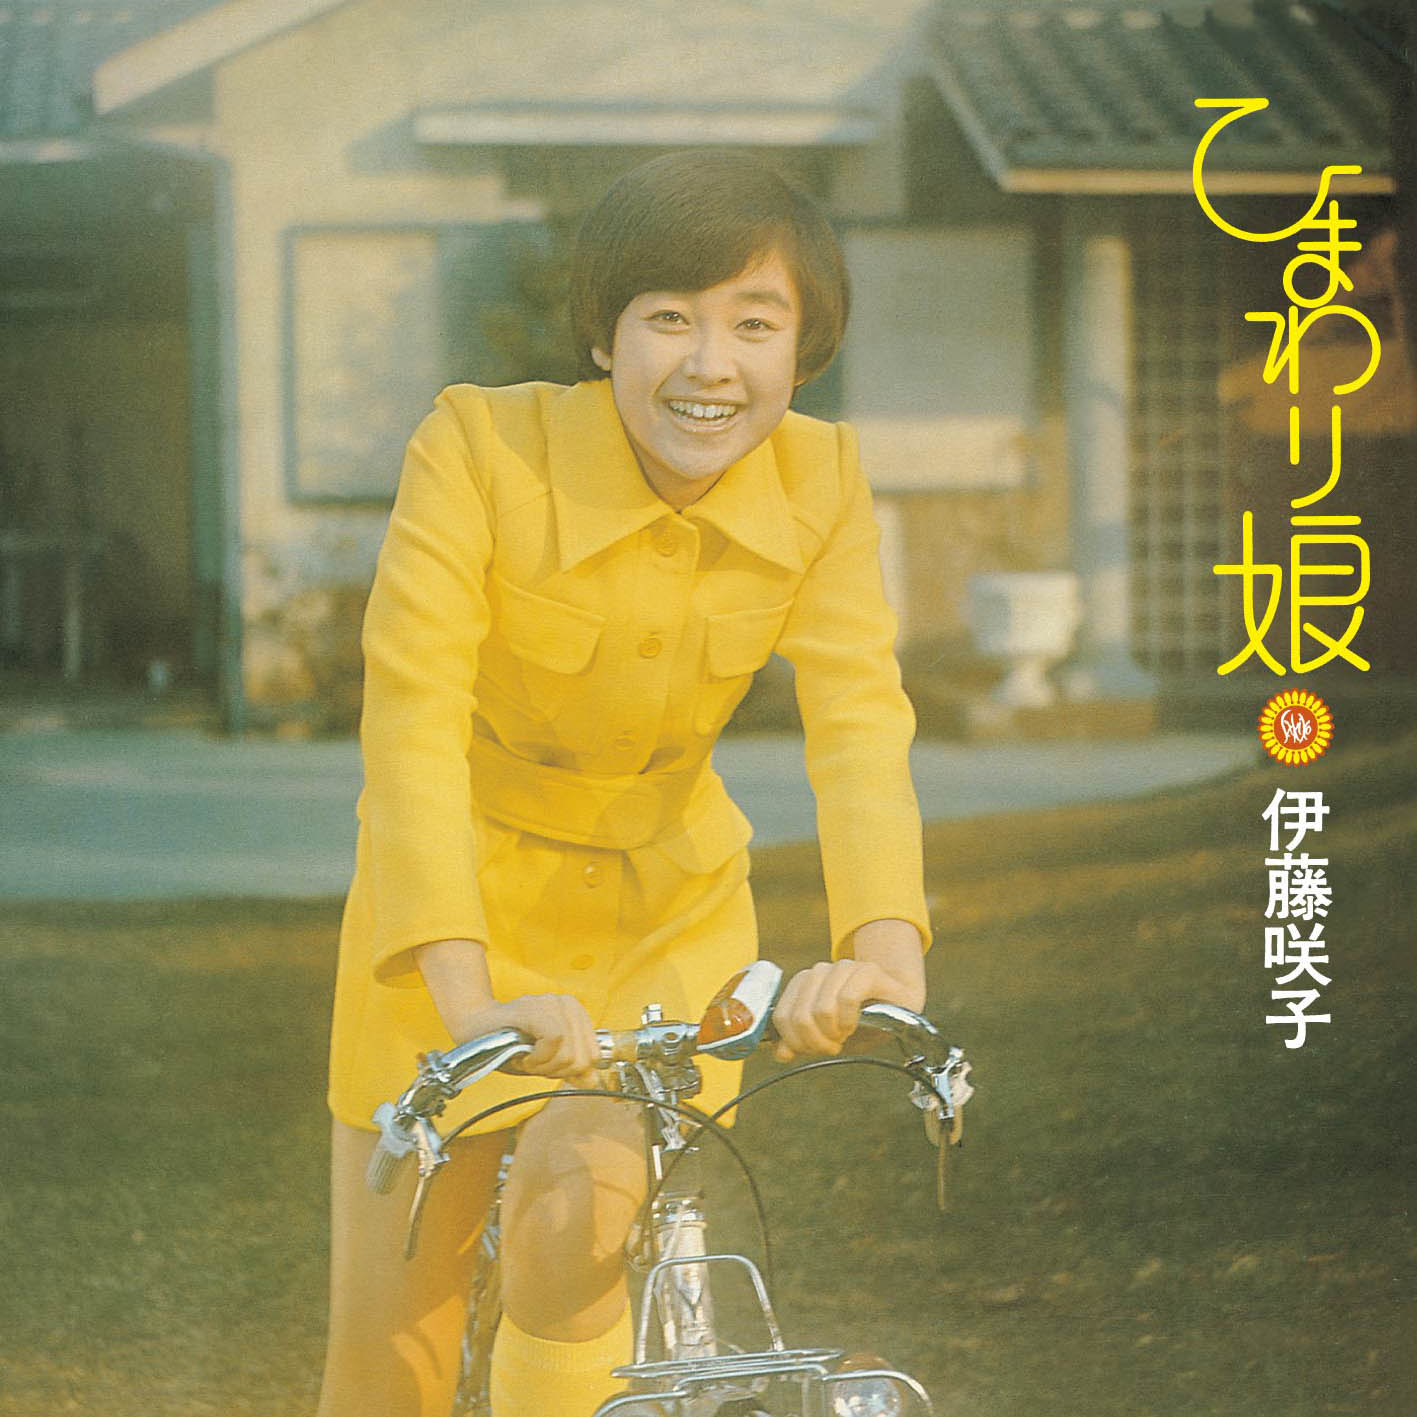 3/29発売 伊藤咲子 1974年「ひまわり娘」でデビュー、オリジナル・アルバム 6タイトル復刻!